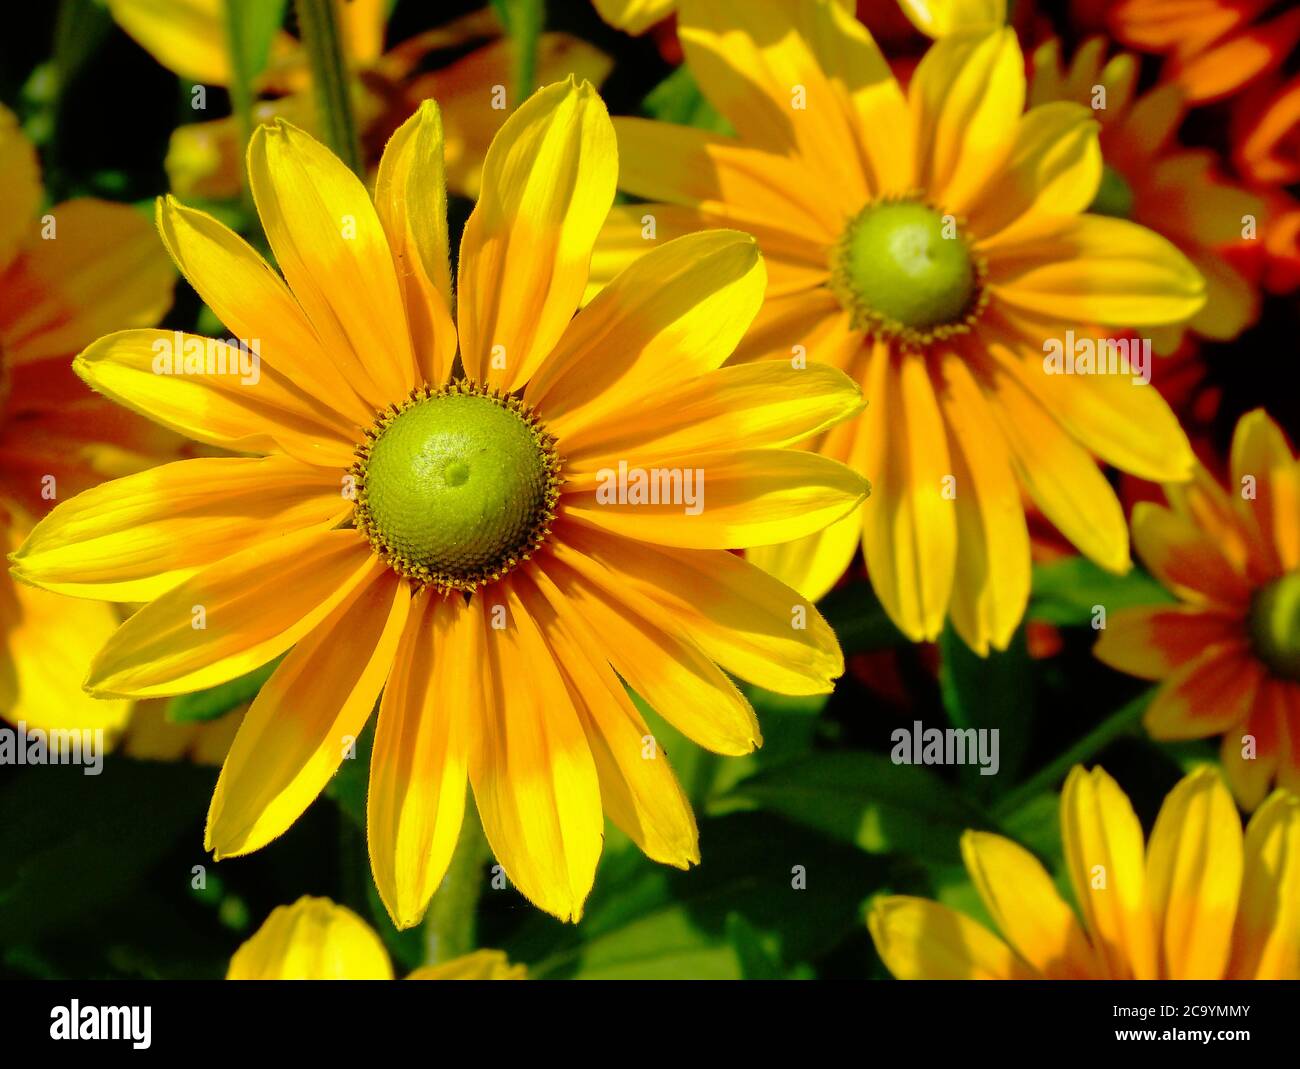 Gelb und orange Gänseblümchen Makro. Weicher grüner Hintergrund. Sommergartenblumen. Selektiver Fokus. Schönheit in der Natur. Grünes Laub. Zerbrechliche gelbe Blütenblätter Stockfoto